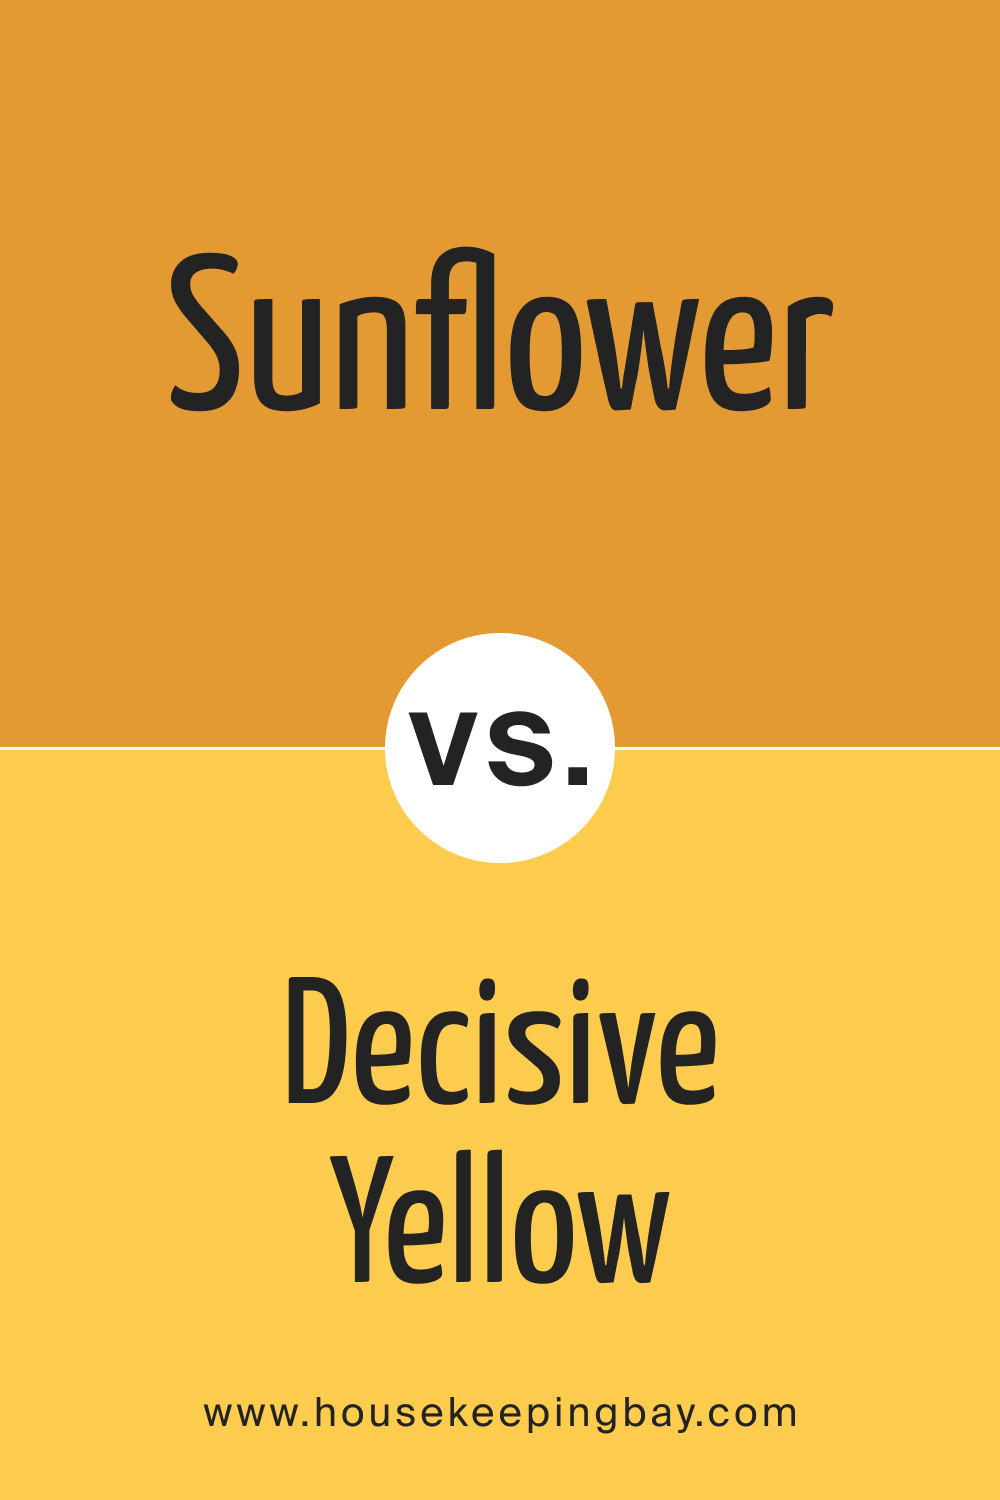 Sunflower SW 6678 vs SW 6902 Decisive Yellow